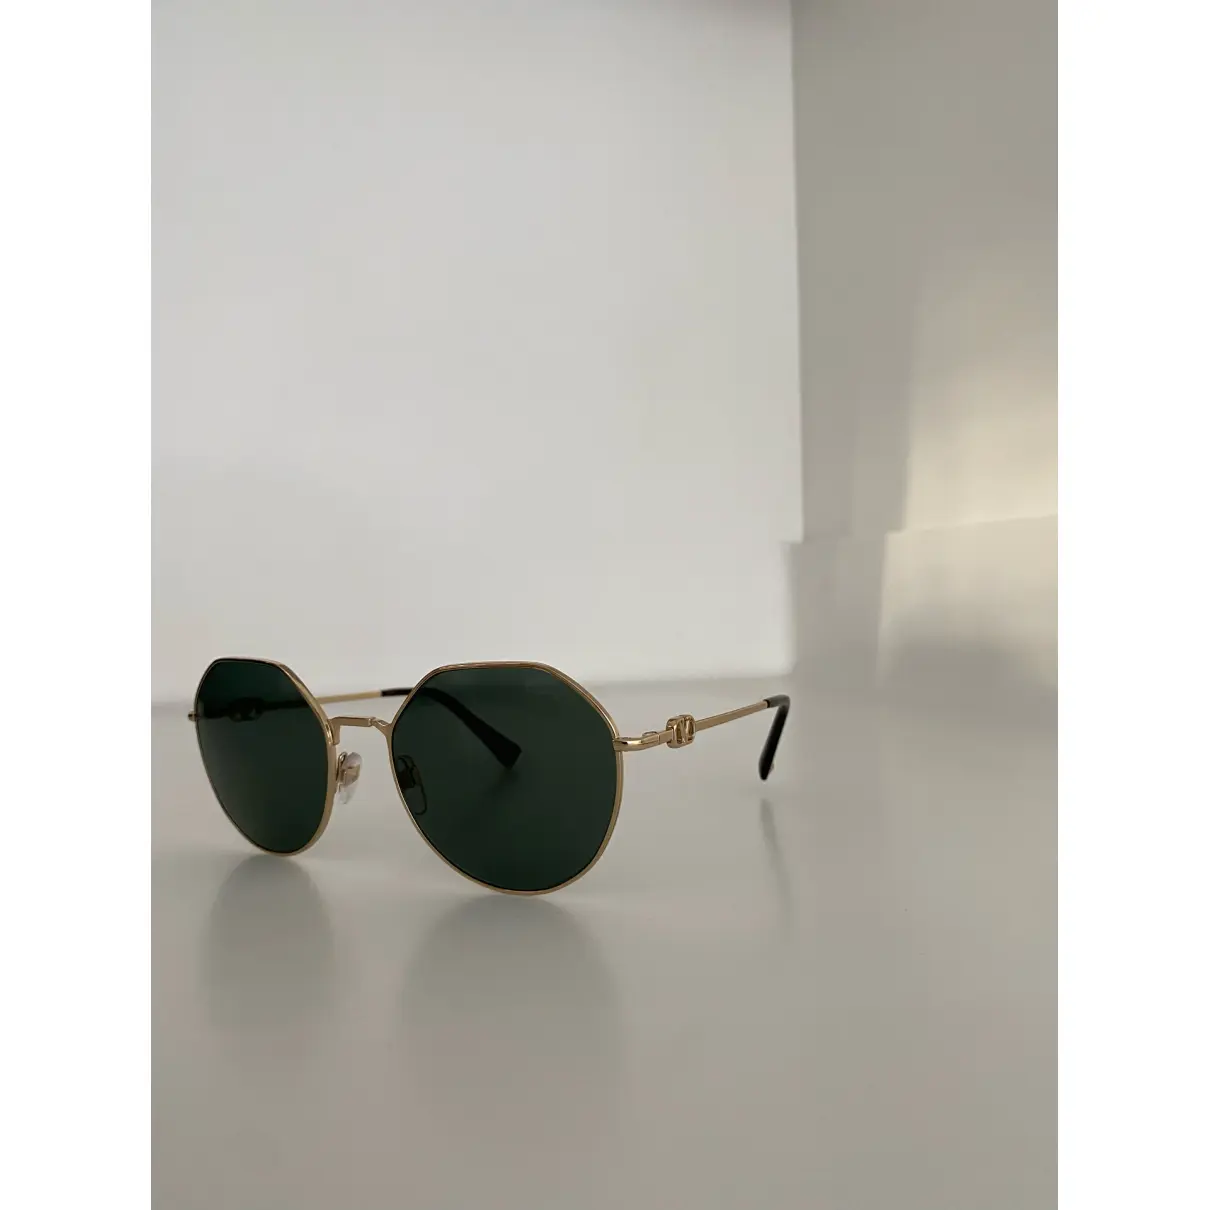 Luxury Valentino Garavani Sunglasses Women